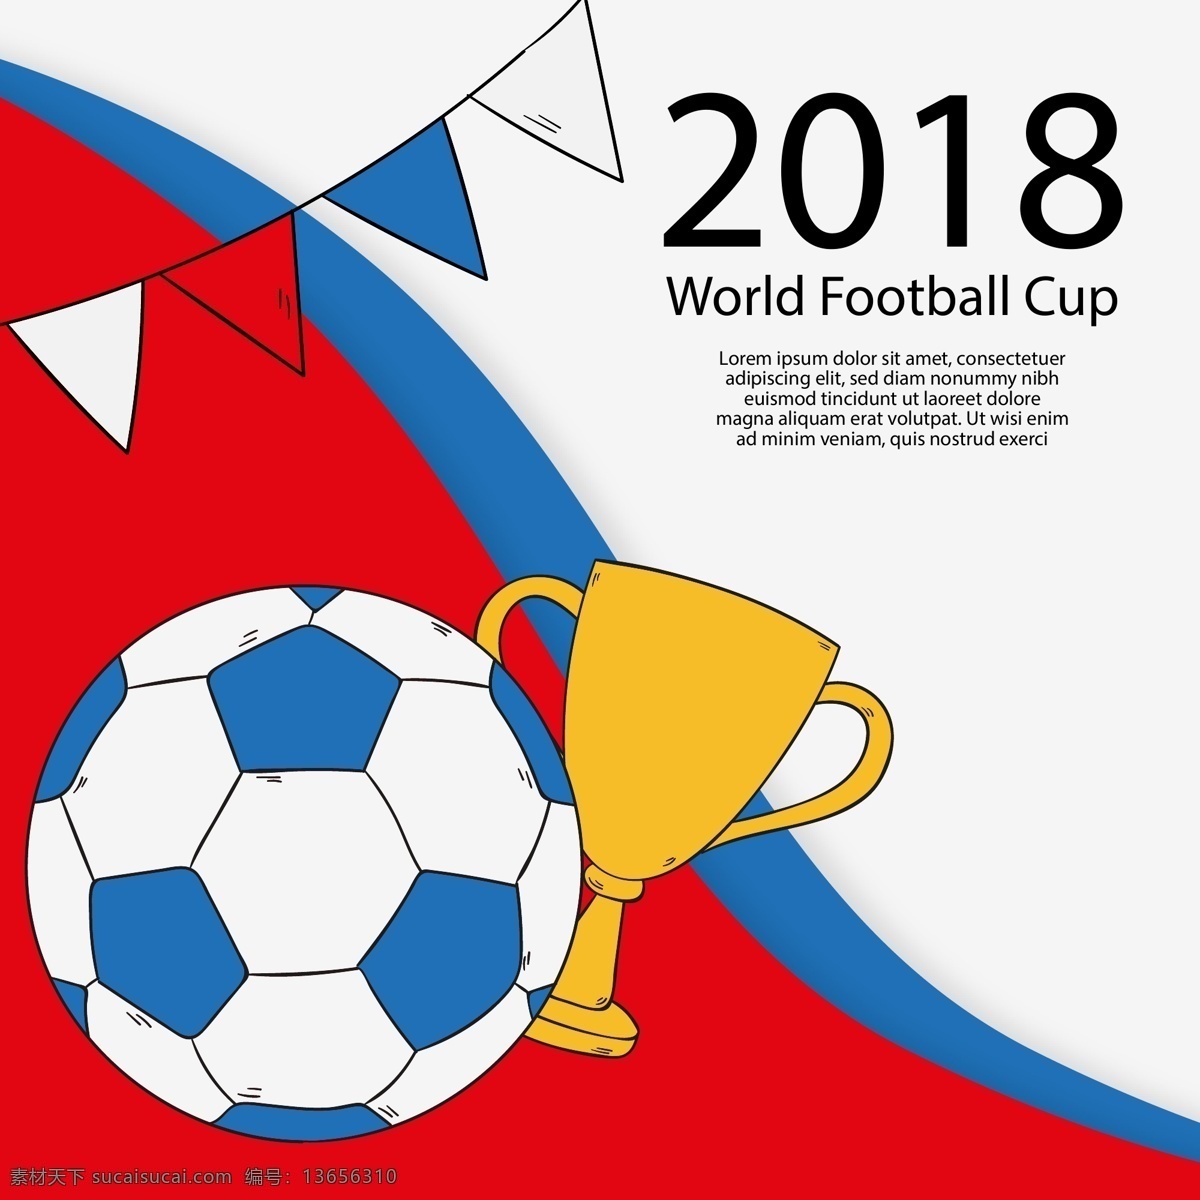 2018 手绘 风格 世界杯 足球赛 背景 矢量素材 足球 奖杯 金色 俄罗斯 欧洲杯 卡通 比赛 体育 竞赛 扁平